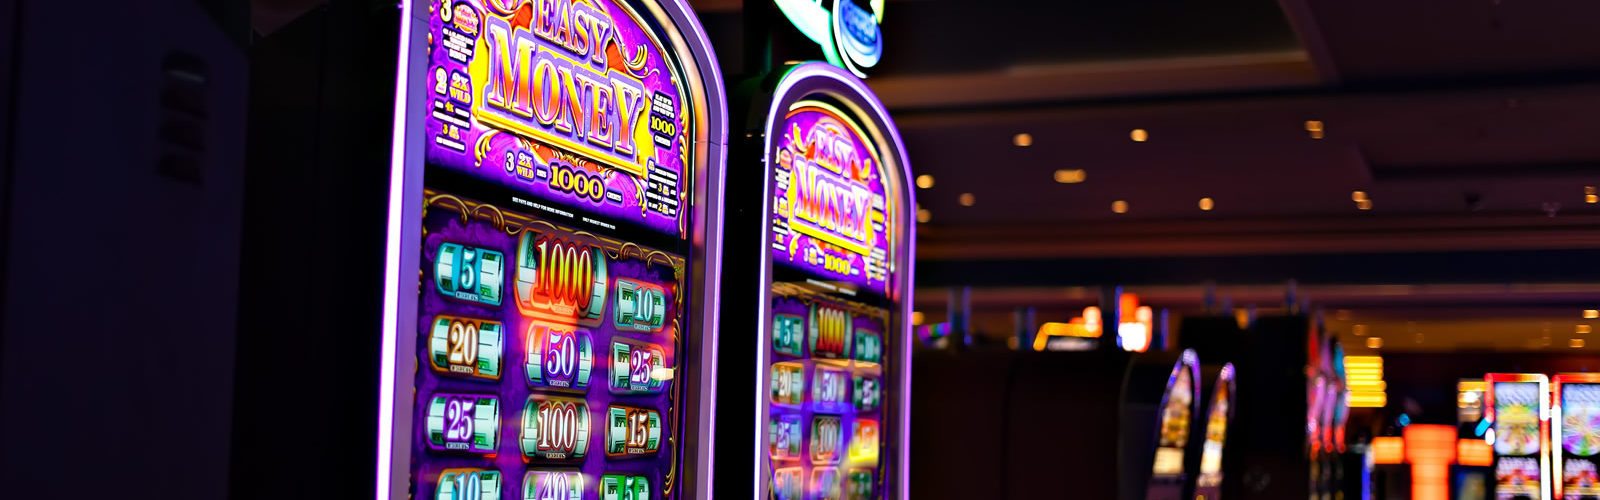 casinos-jeux-argents-hasard-gambling-etats-unis-une